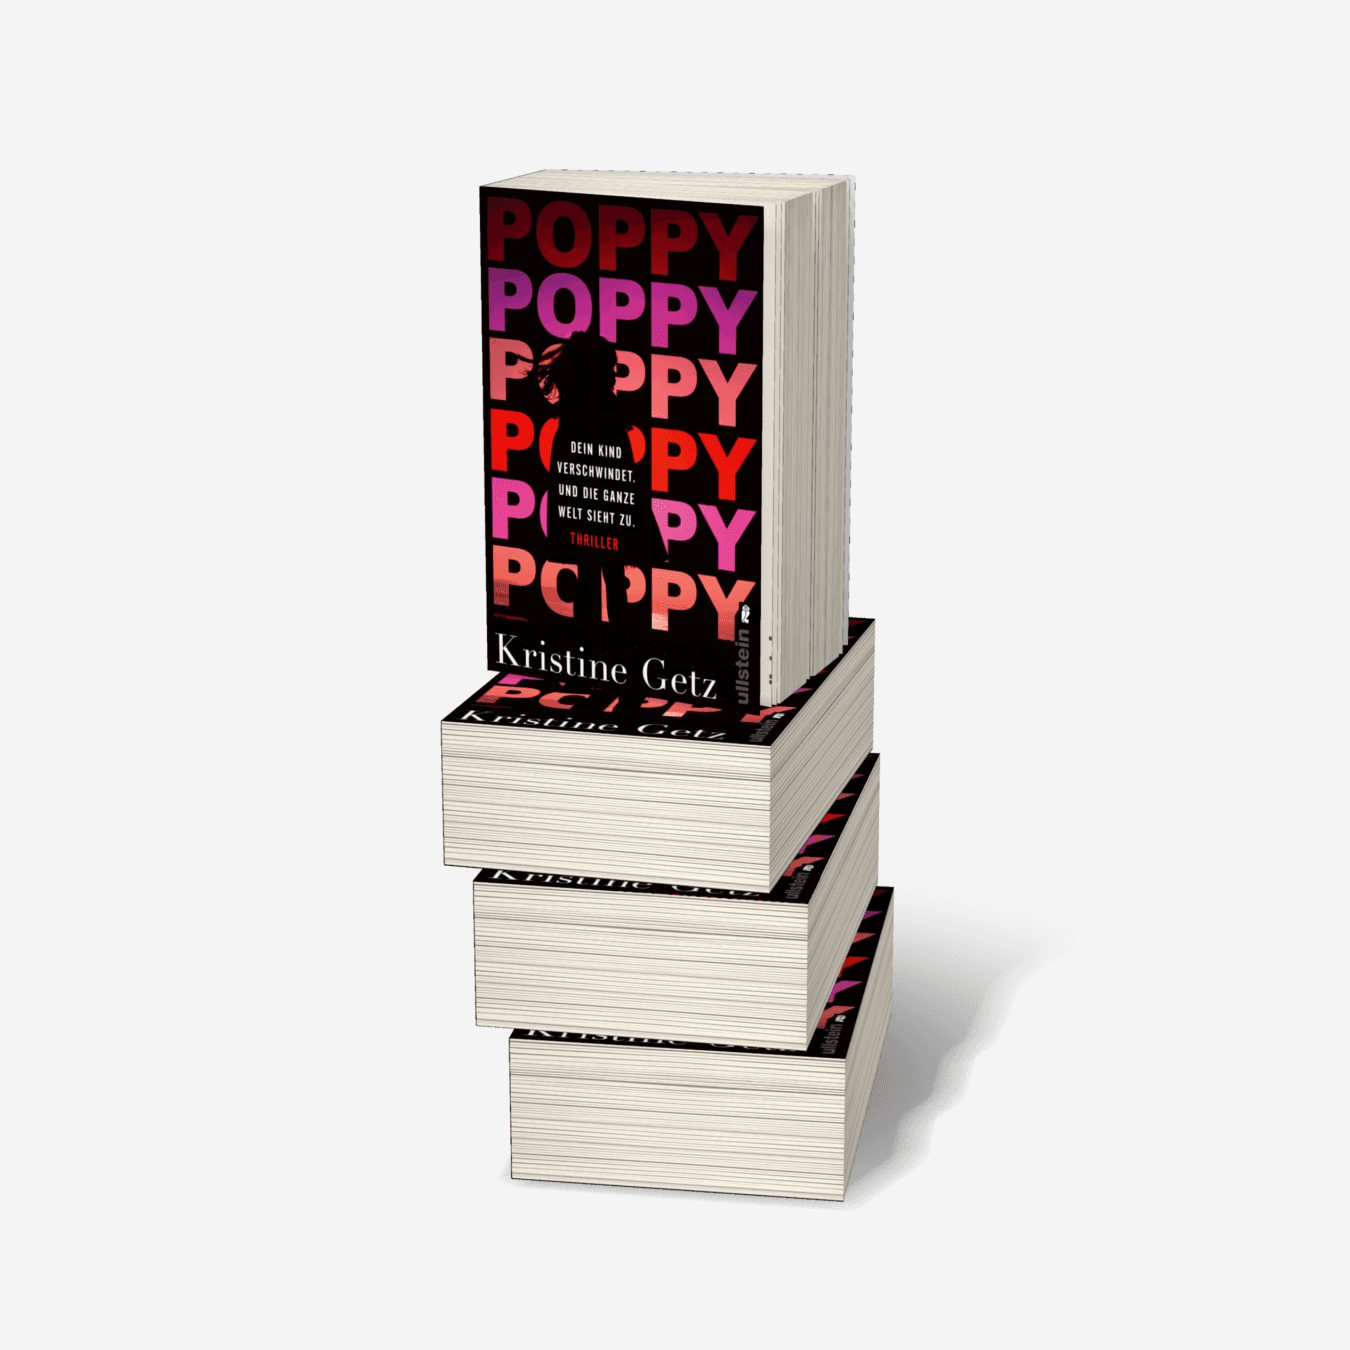 Buchcover von Poppy. Dein Kind verschwindet. Und die ganze Welt sieht zu. (Die Emer-Murphy-Serie 1)